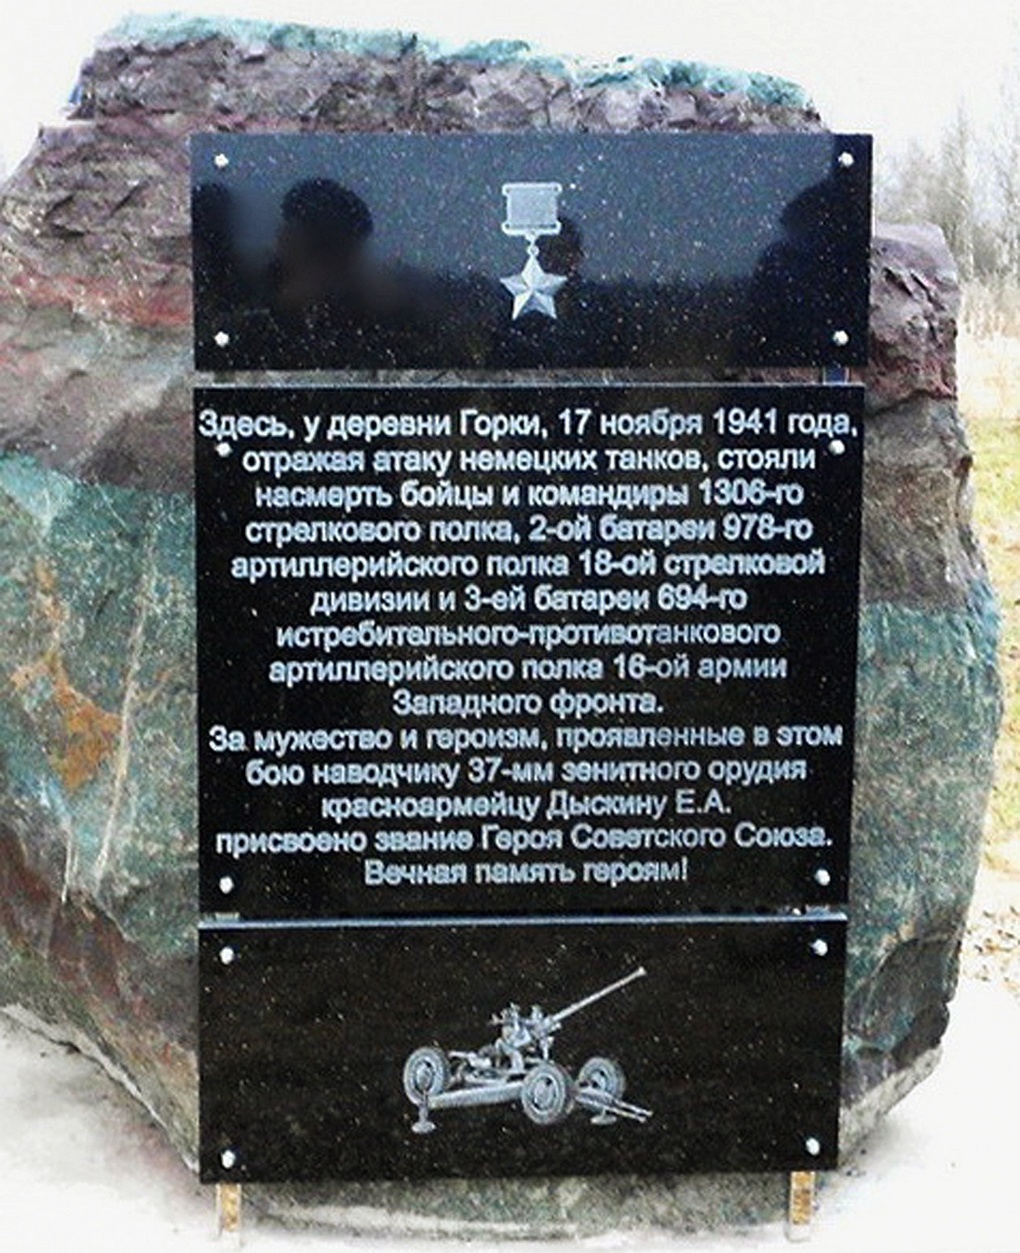 Мемориальный камень у деревни Горки.